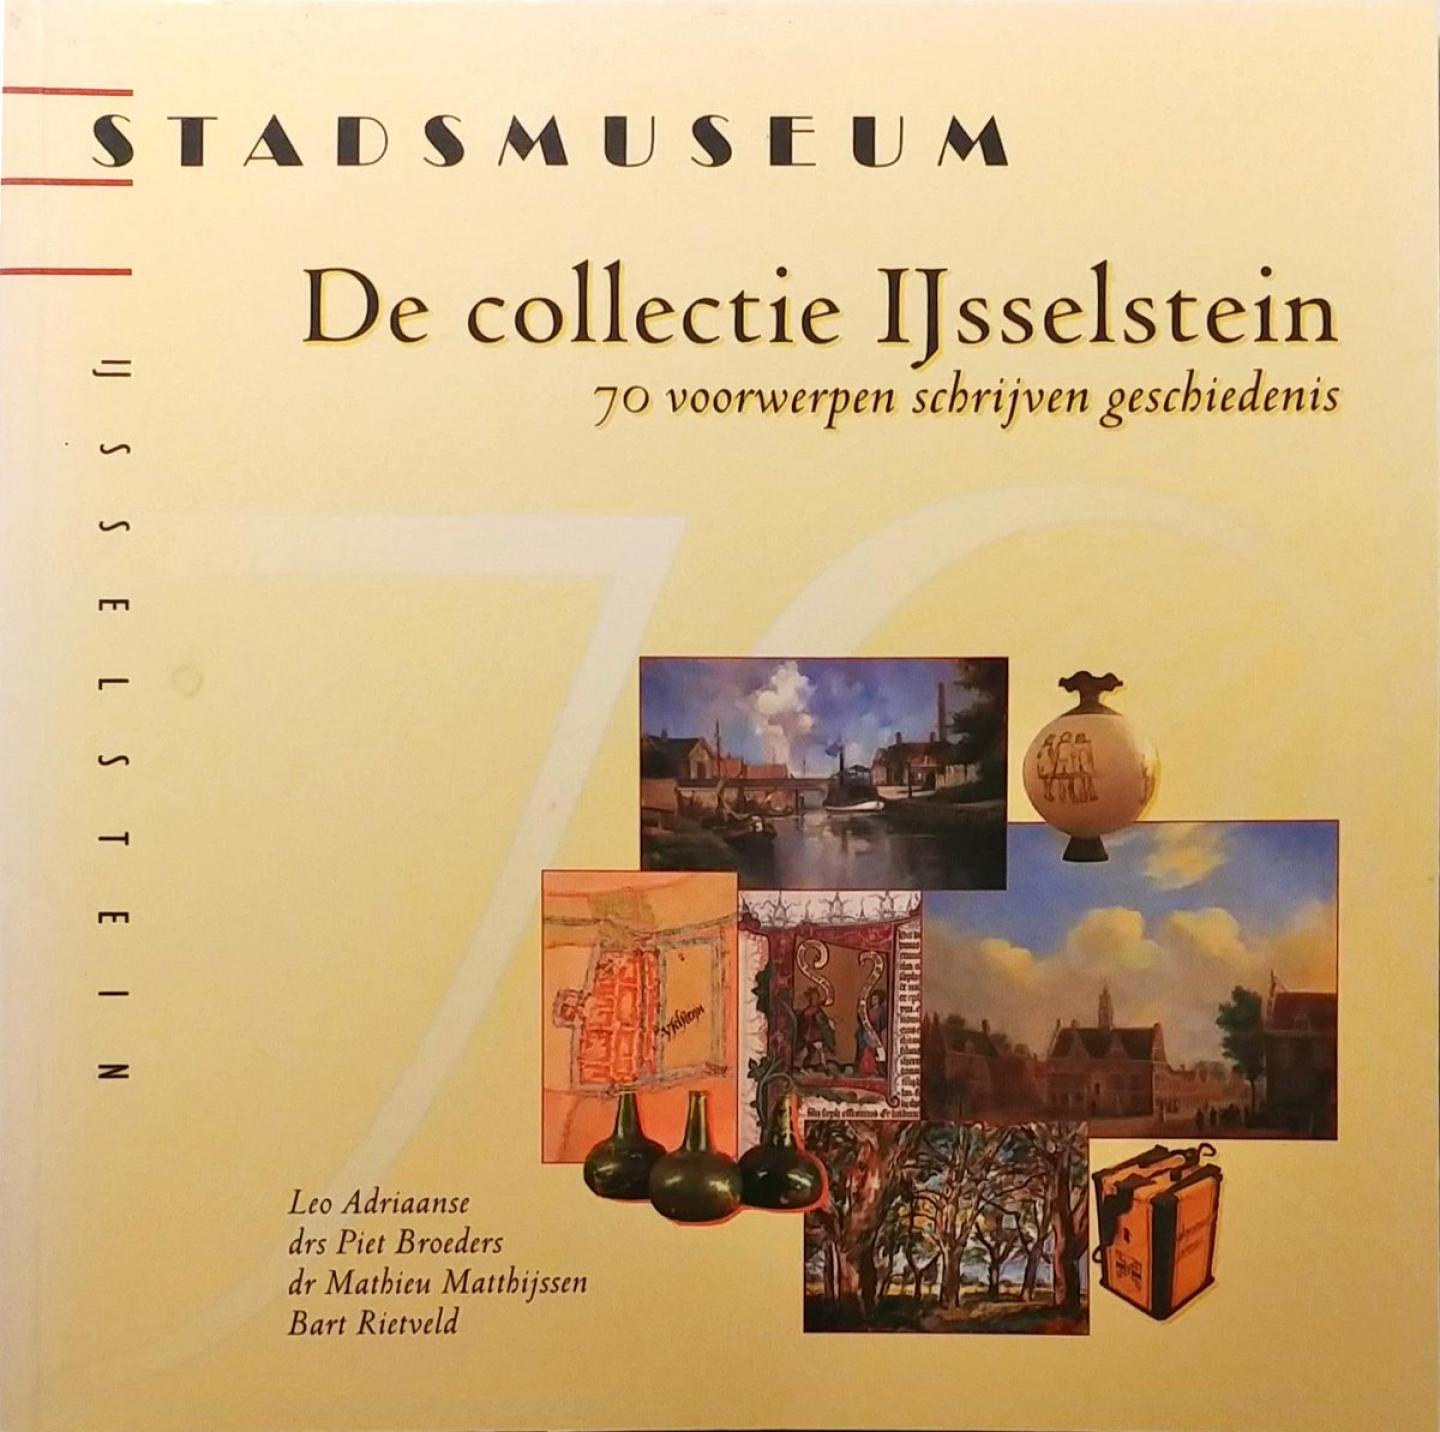 Adriaanse, Leo - Broeders, drs Piet - Matthijssen, dr Mathieu - Rietveld, Bart - De collectie IJsselstein - 70 voorwerpen schrijven geschiedenis